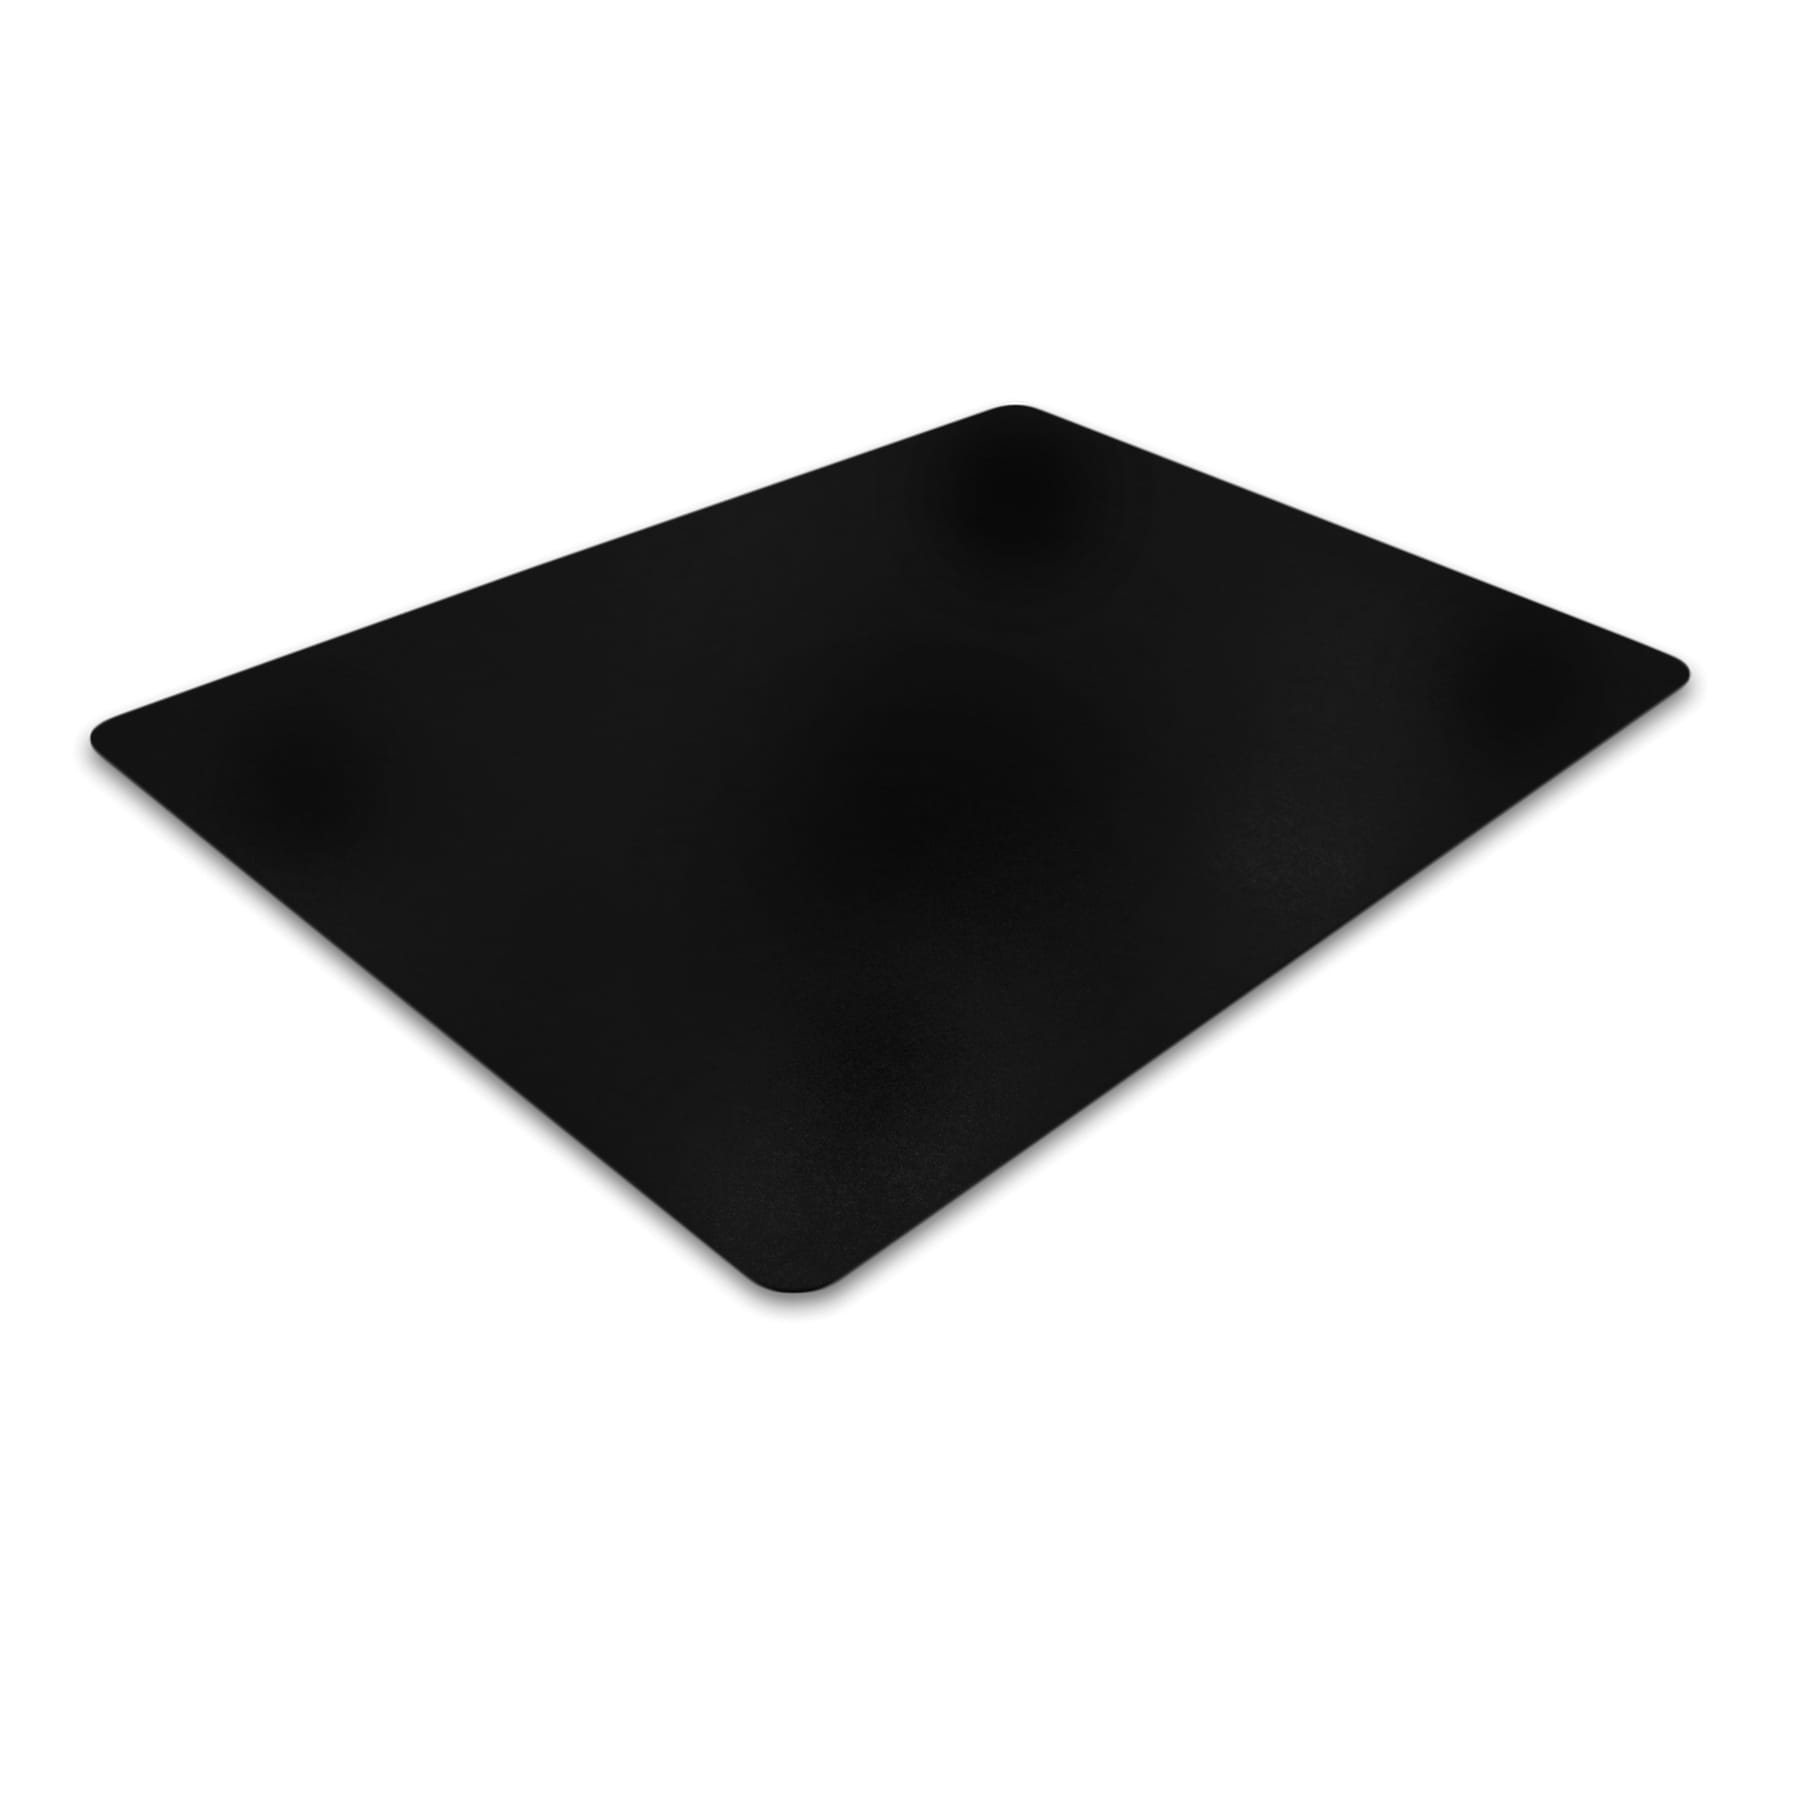 Advantagemat 3-ft x 4-ft Black PVC Rectangular Indoor Chair Mat in the ...